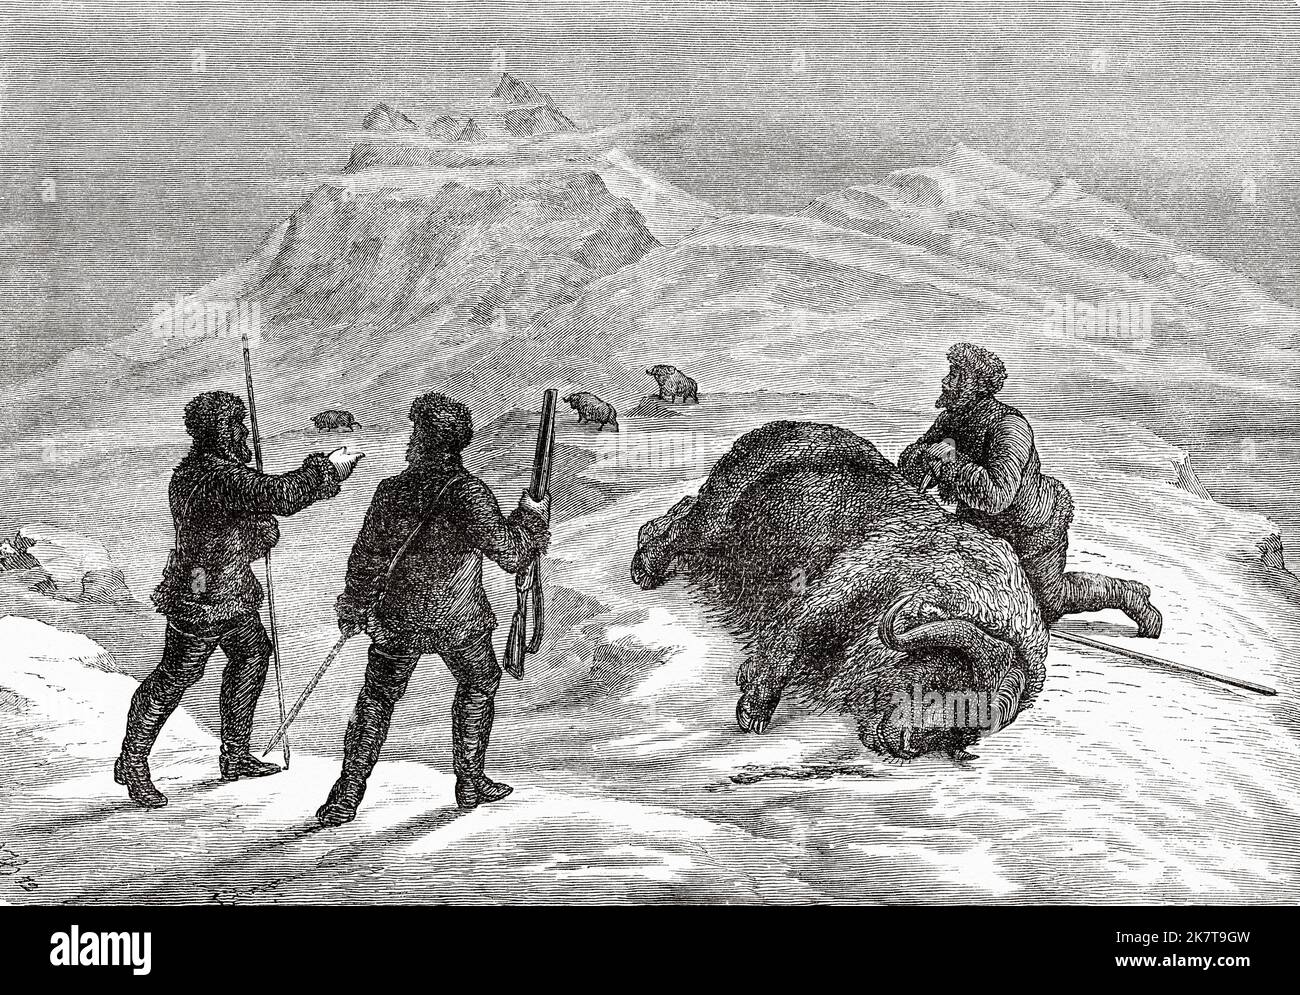 La chasse au boeuf musqué. Deuxième expédition allemande au pôle Nord avec les navires Germania et Hansa, 1869 Banque D'Images